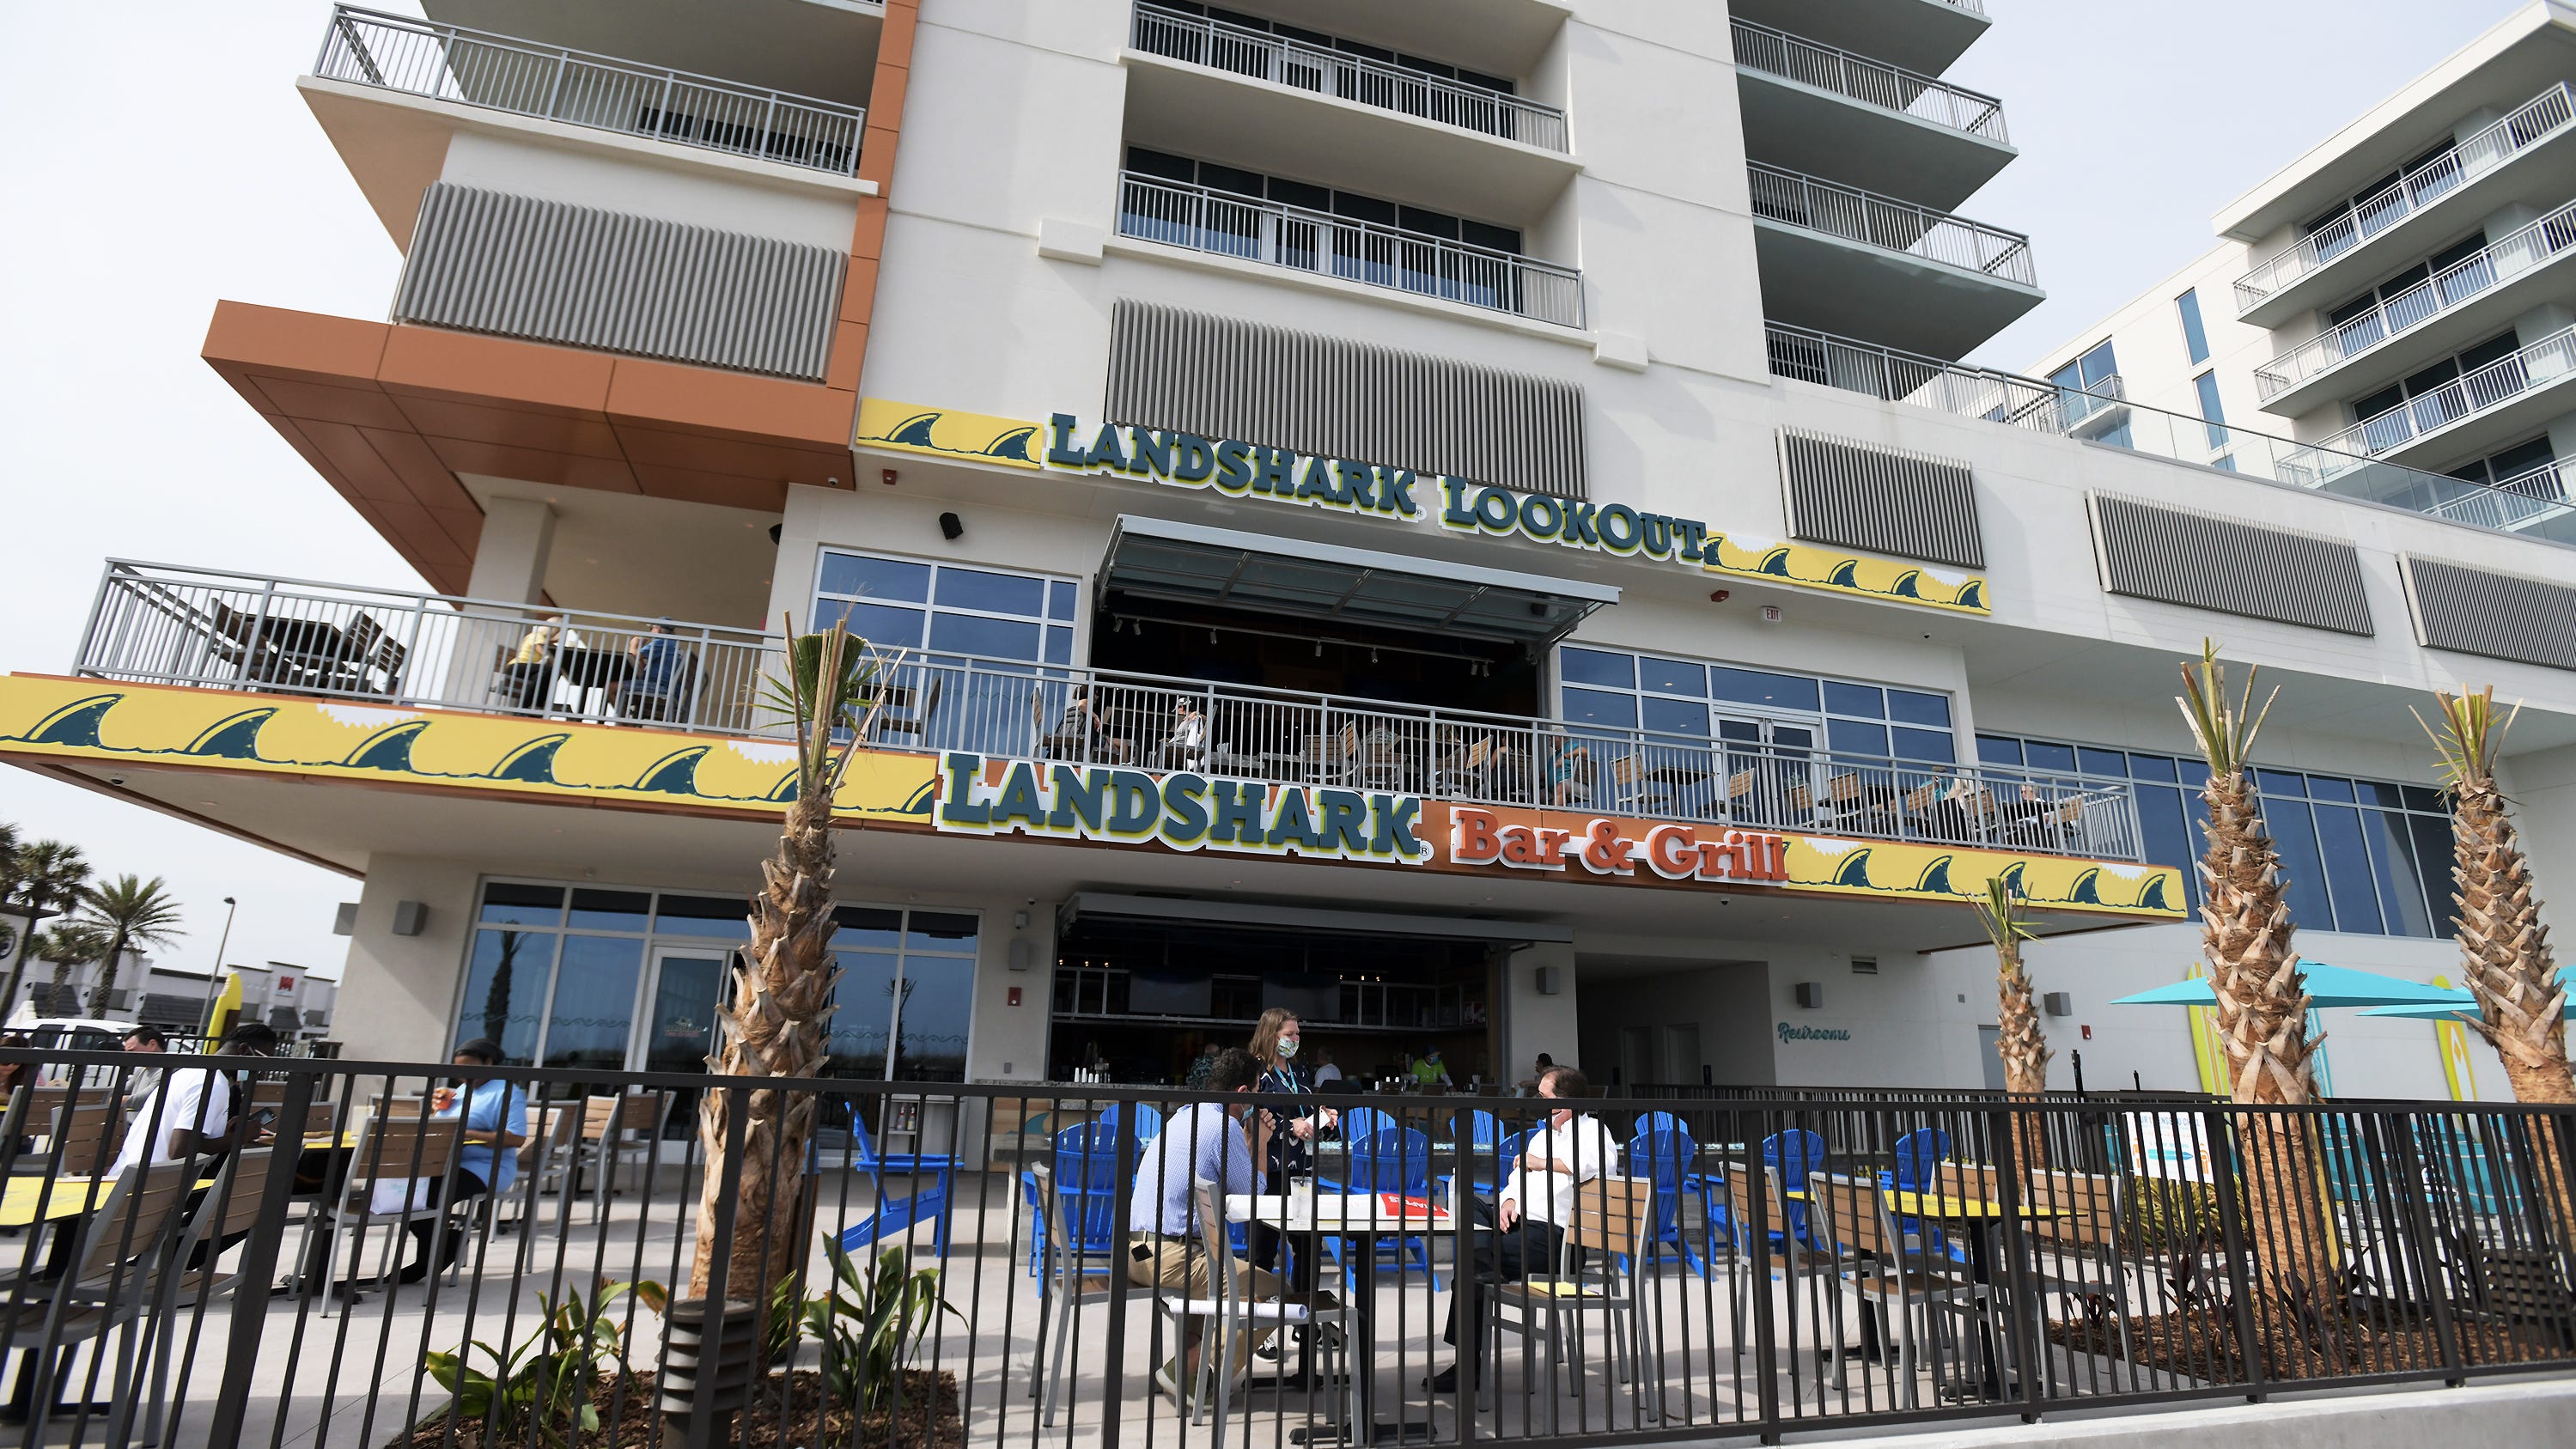 Jacksonville restaurants: What's new in Jacksonville, Atlantic beaches